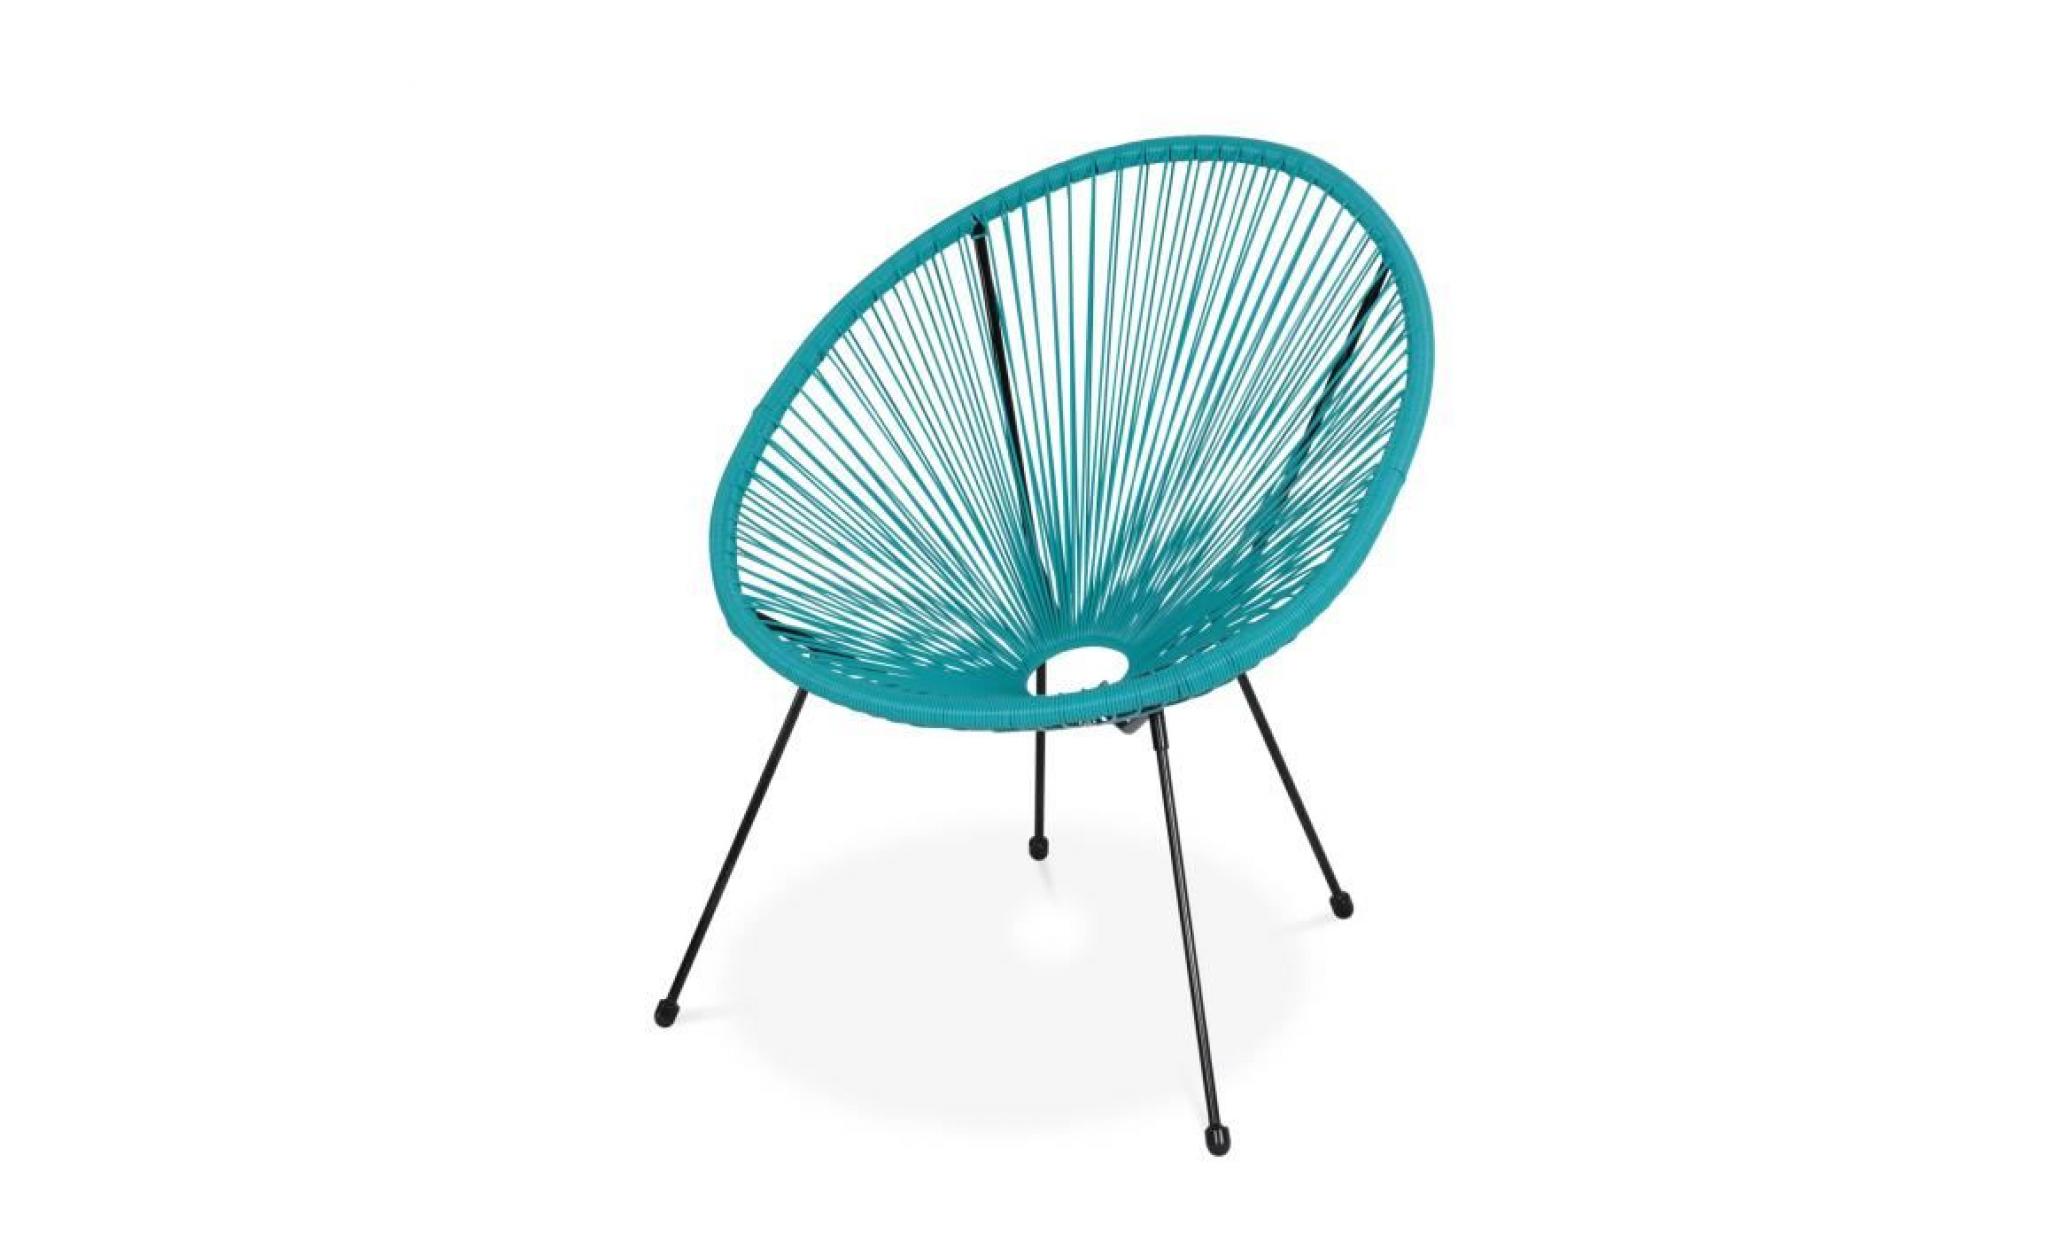 fauteuil acapulco forme d'oeuf   turquoise   fauteuil 4 pieds design rétro, cordage plastique, intérieur / extérieur